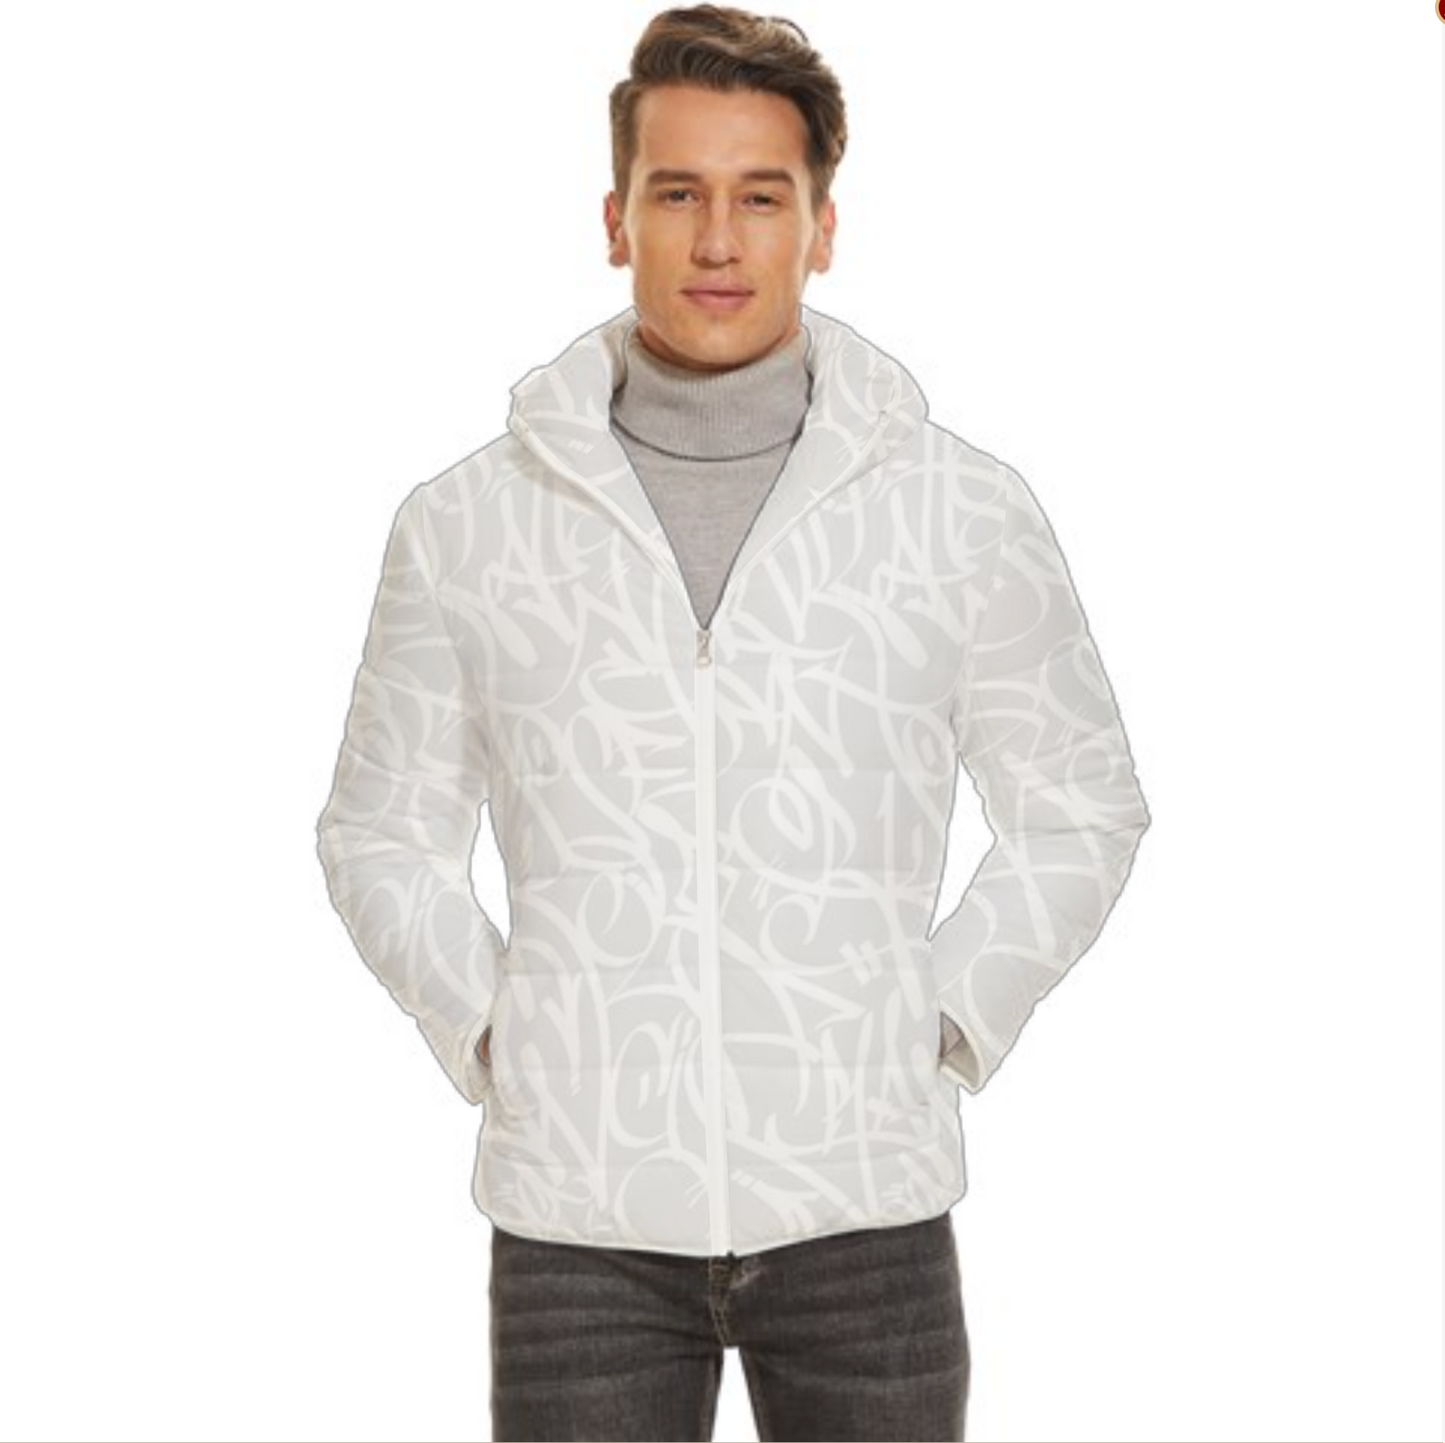 BOSS Jacket Design (White on Gray)